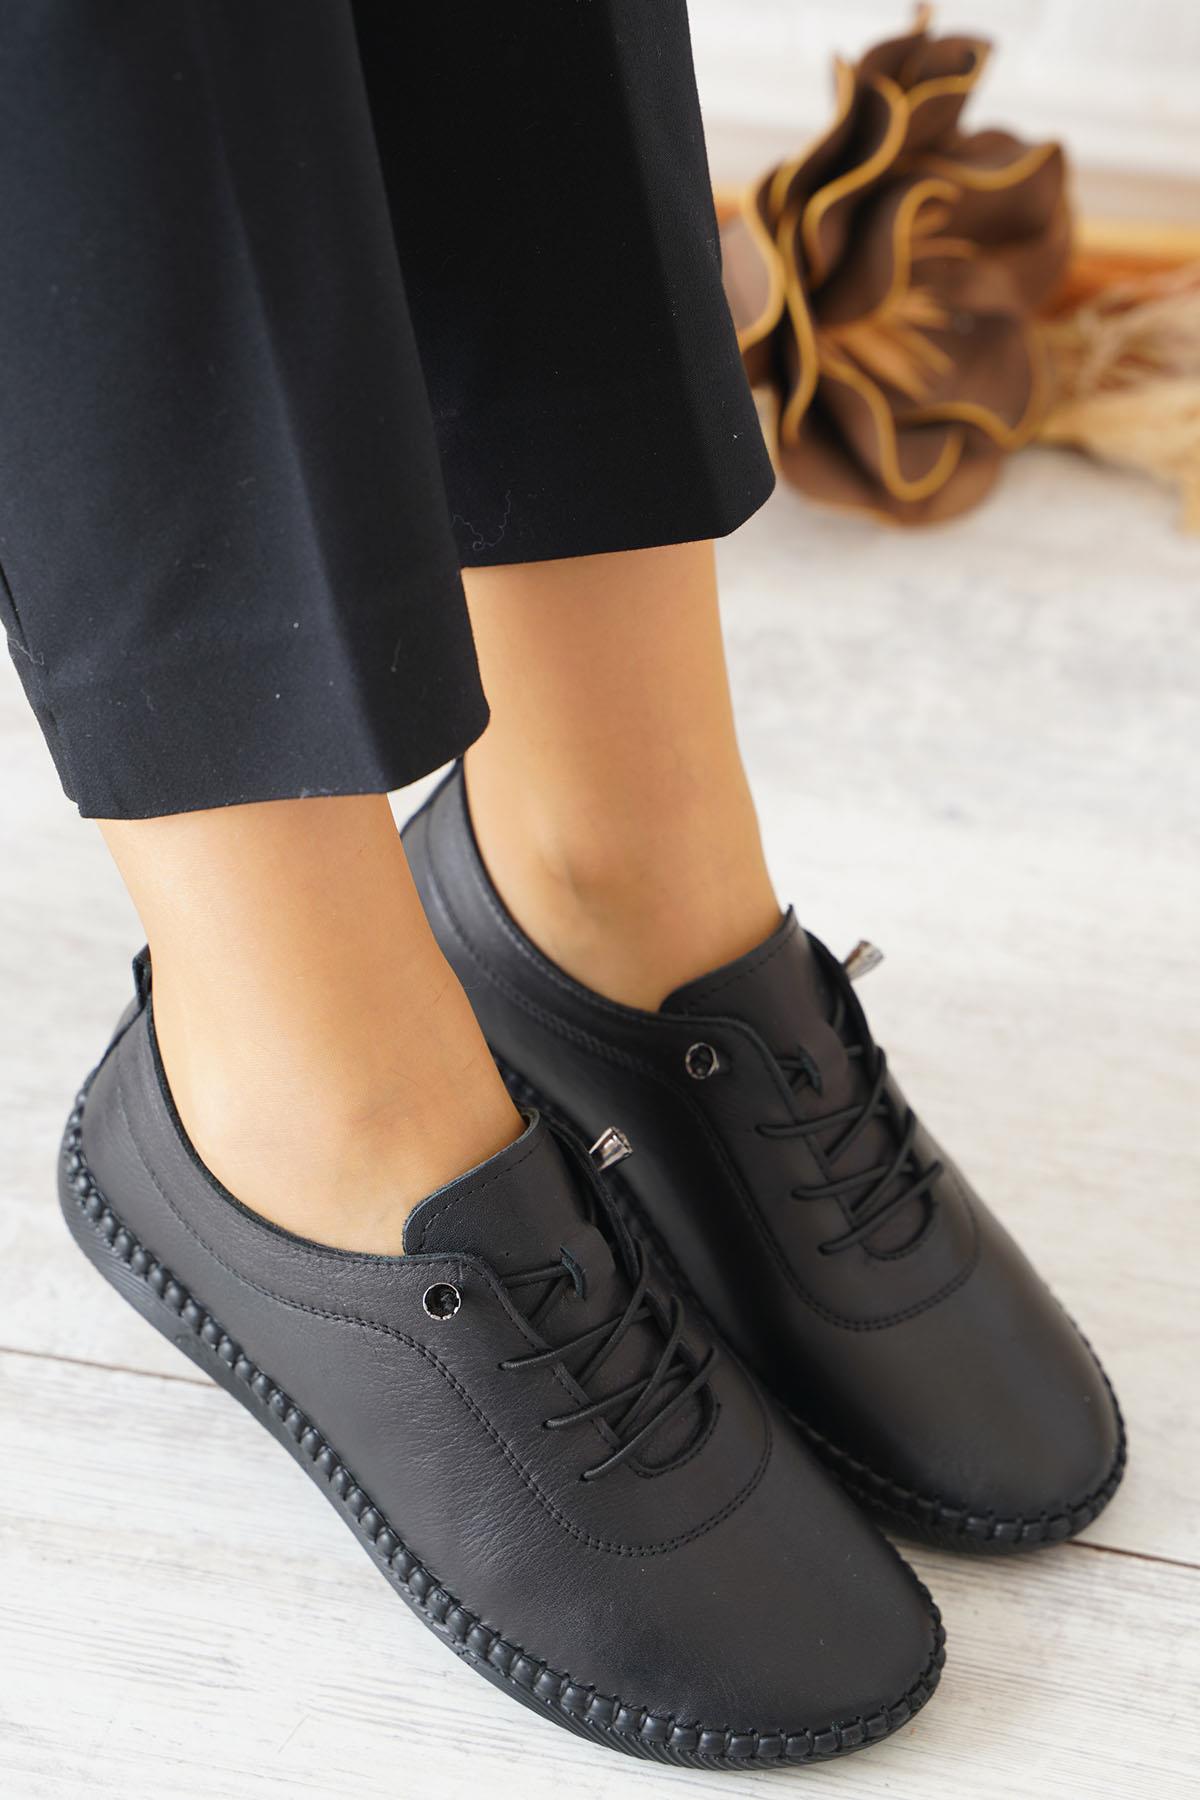 Negade Taban Dikmeli Hakiki Deri Kadın Ayakkabı Siyah Cilt